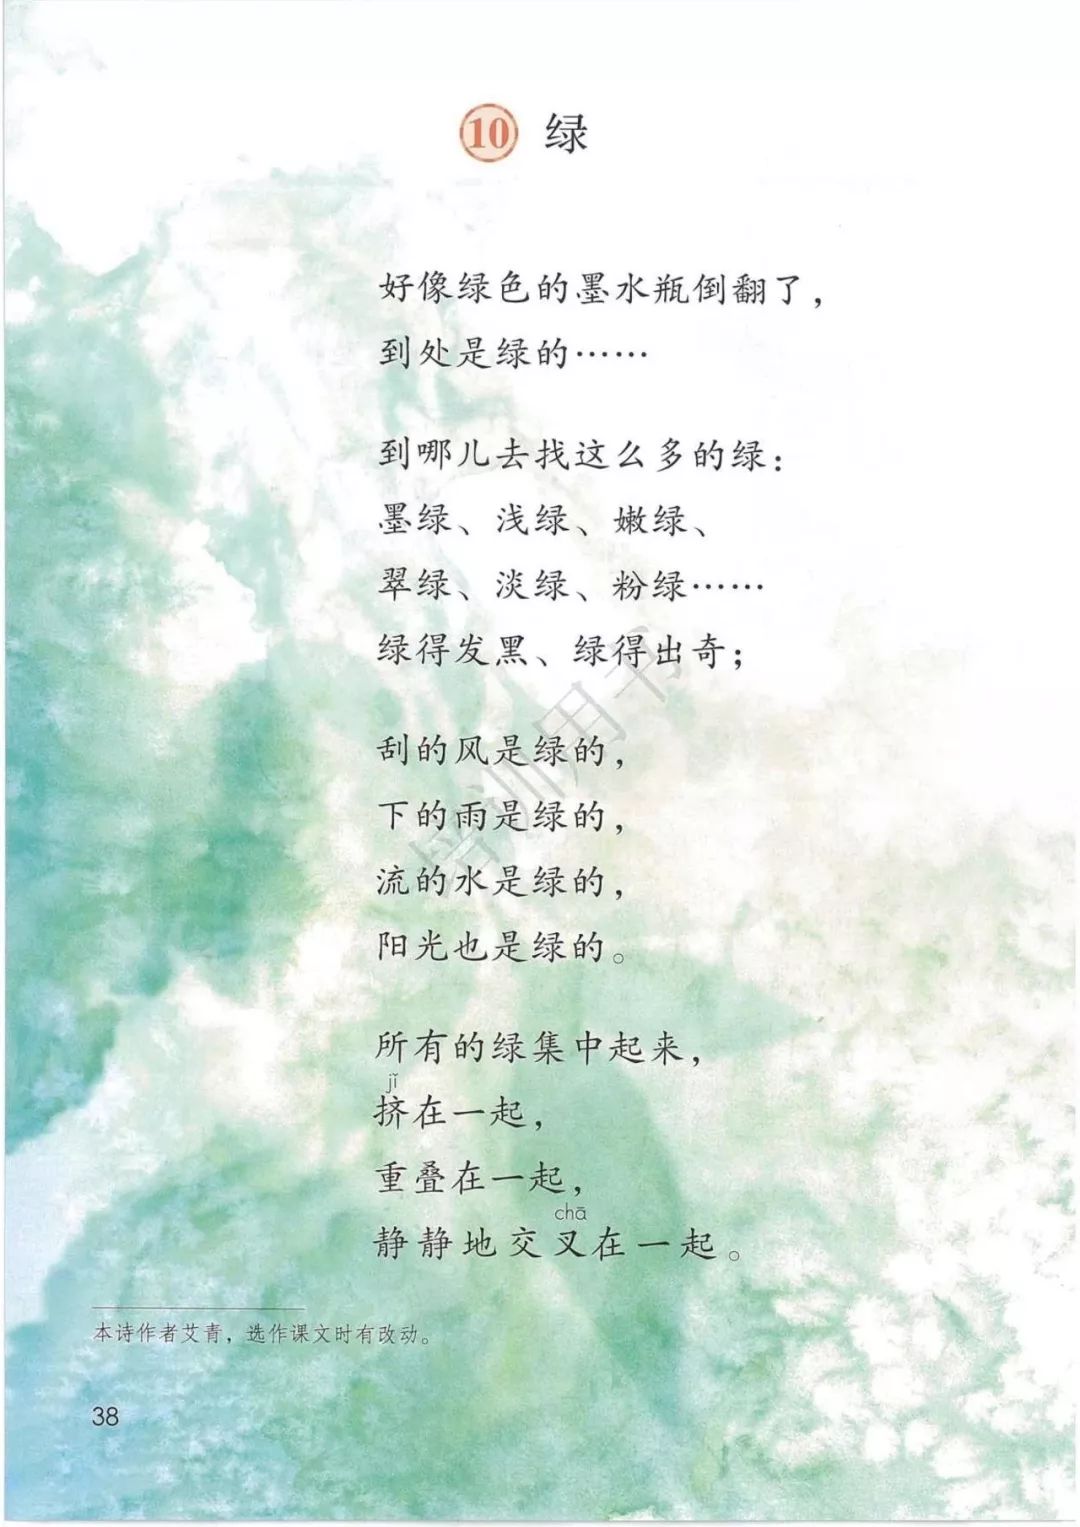 叶赛宁的短诗诗歌图片